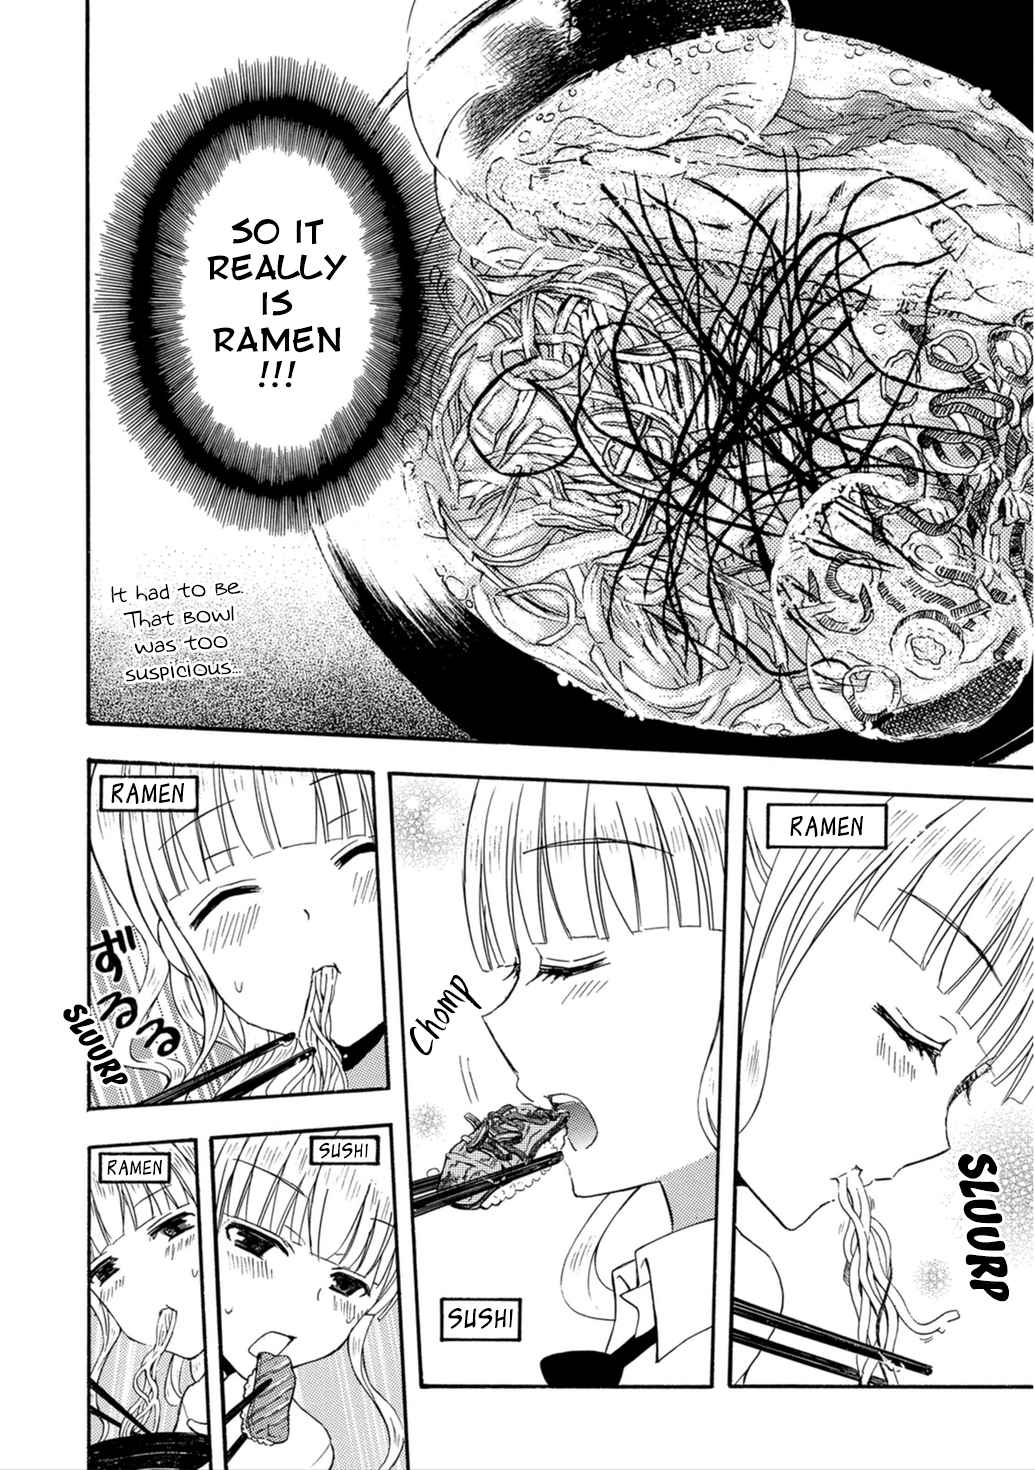 Ramen Daisuki Koizumi san Vol. 3 Ch. 23 Rotation Ramen